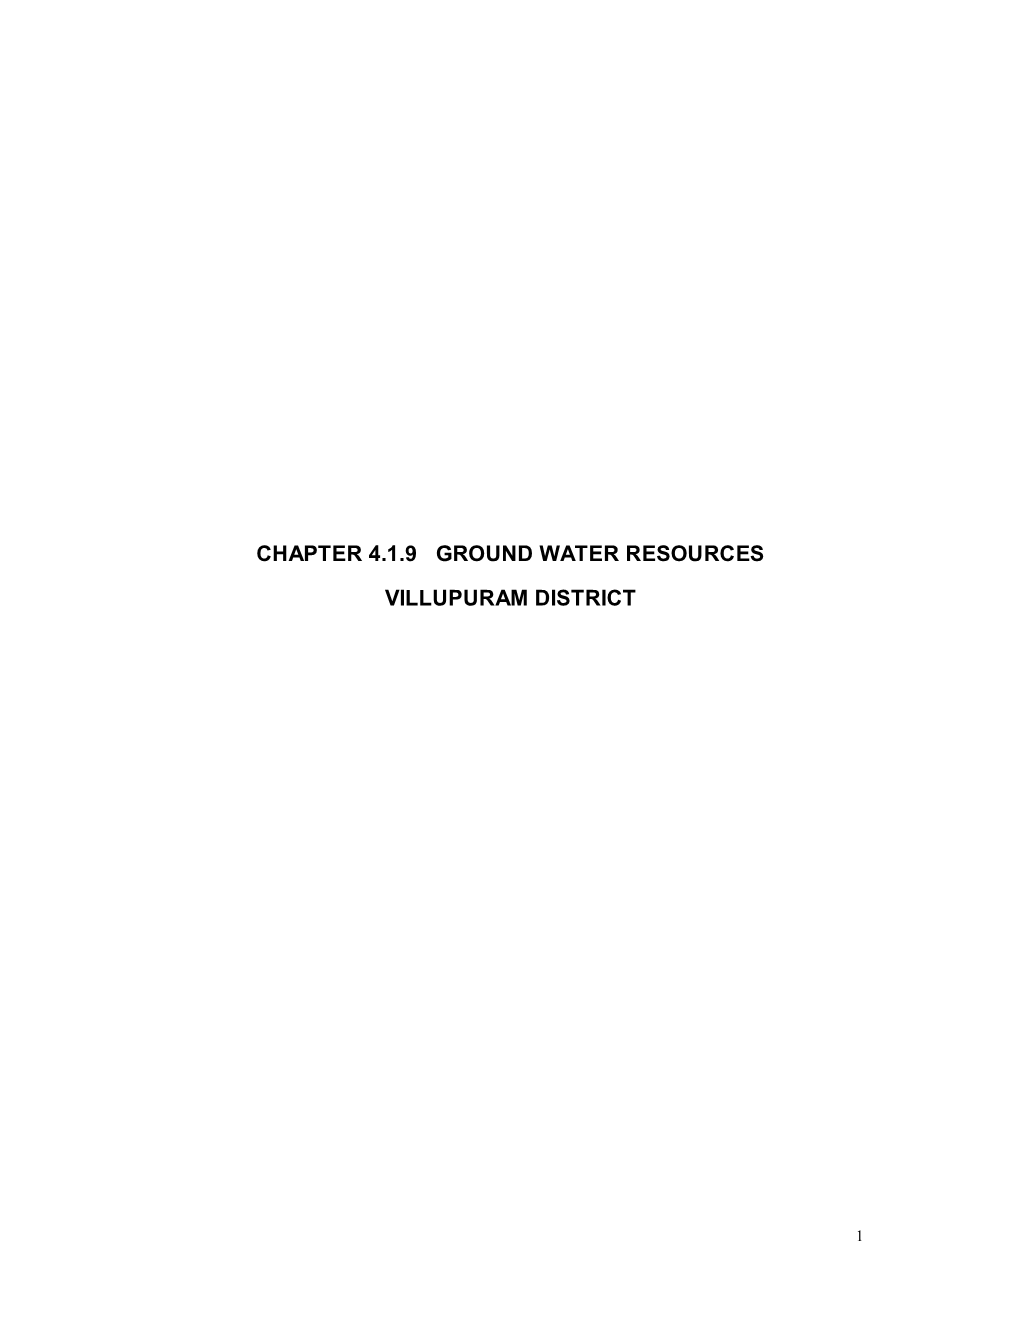 Chapter 4.1.9 Ground Water Resources Villupuram